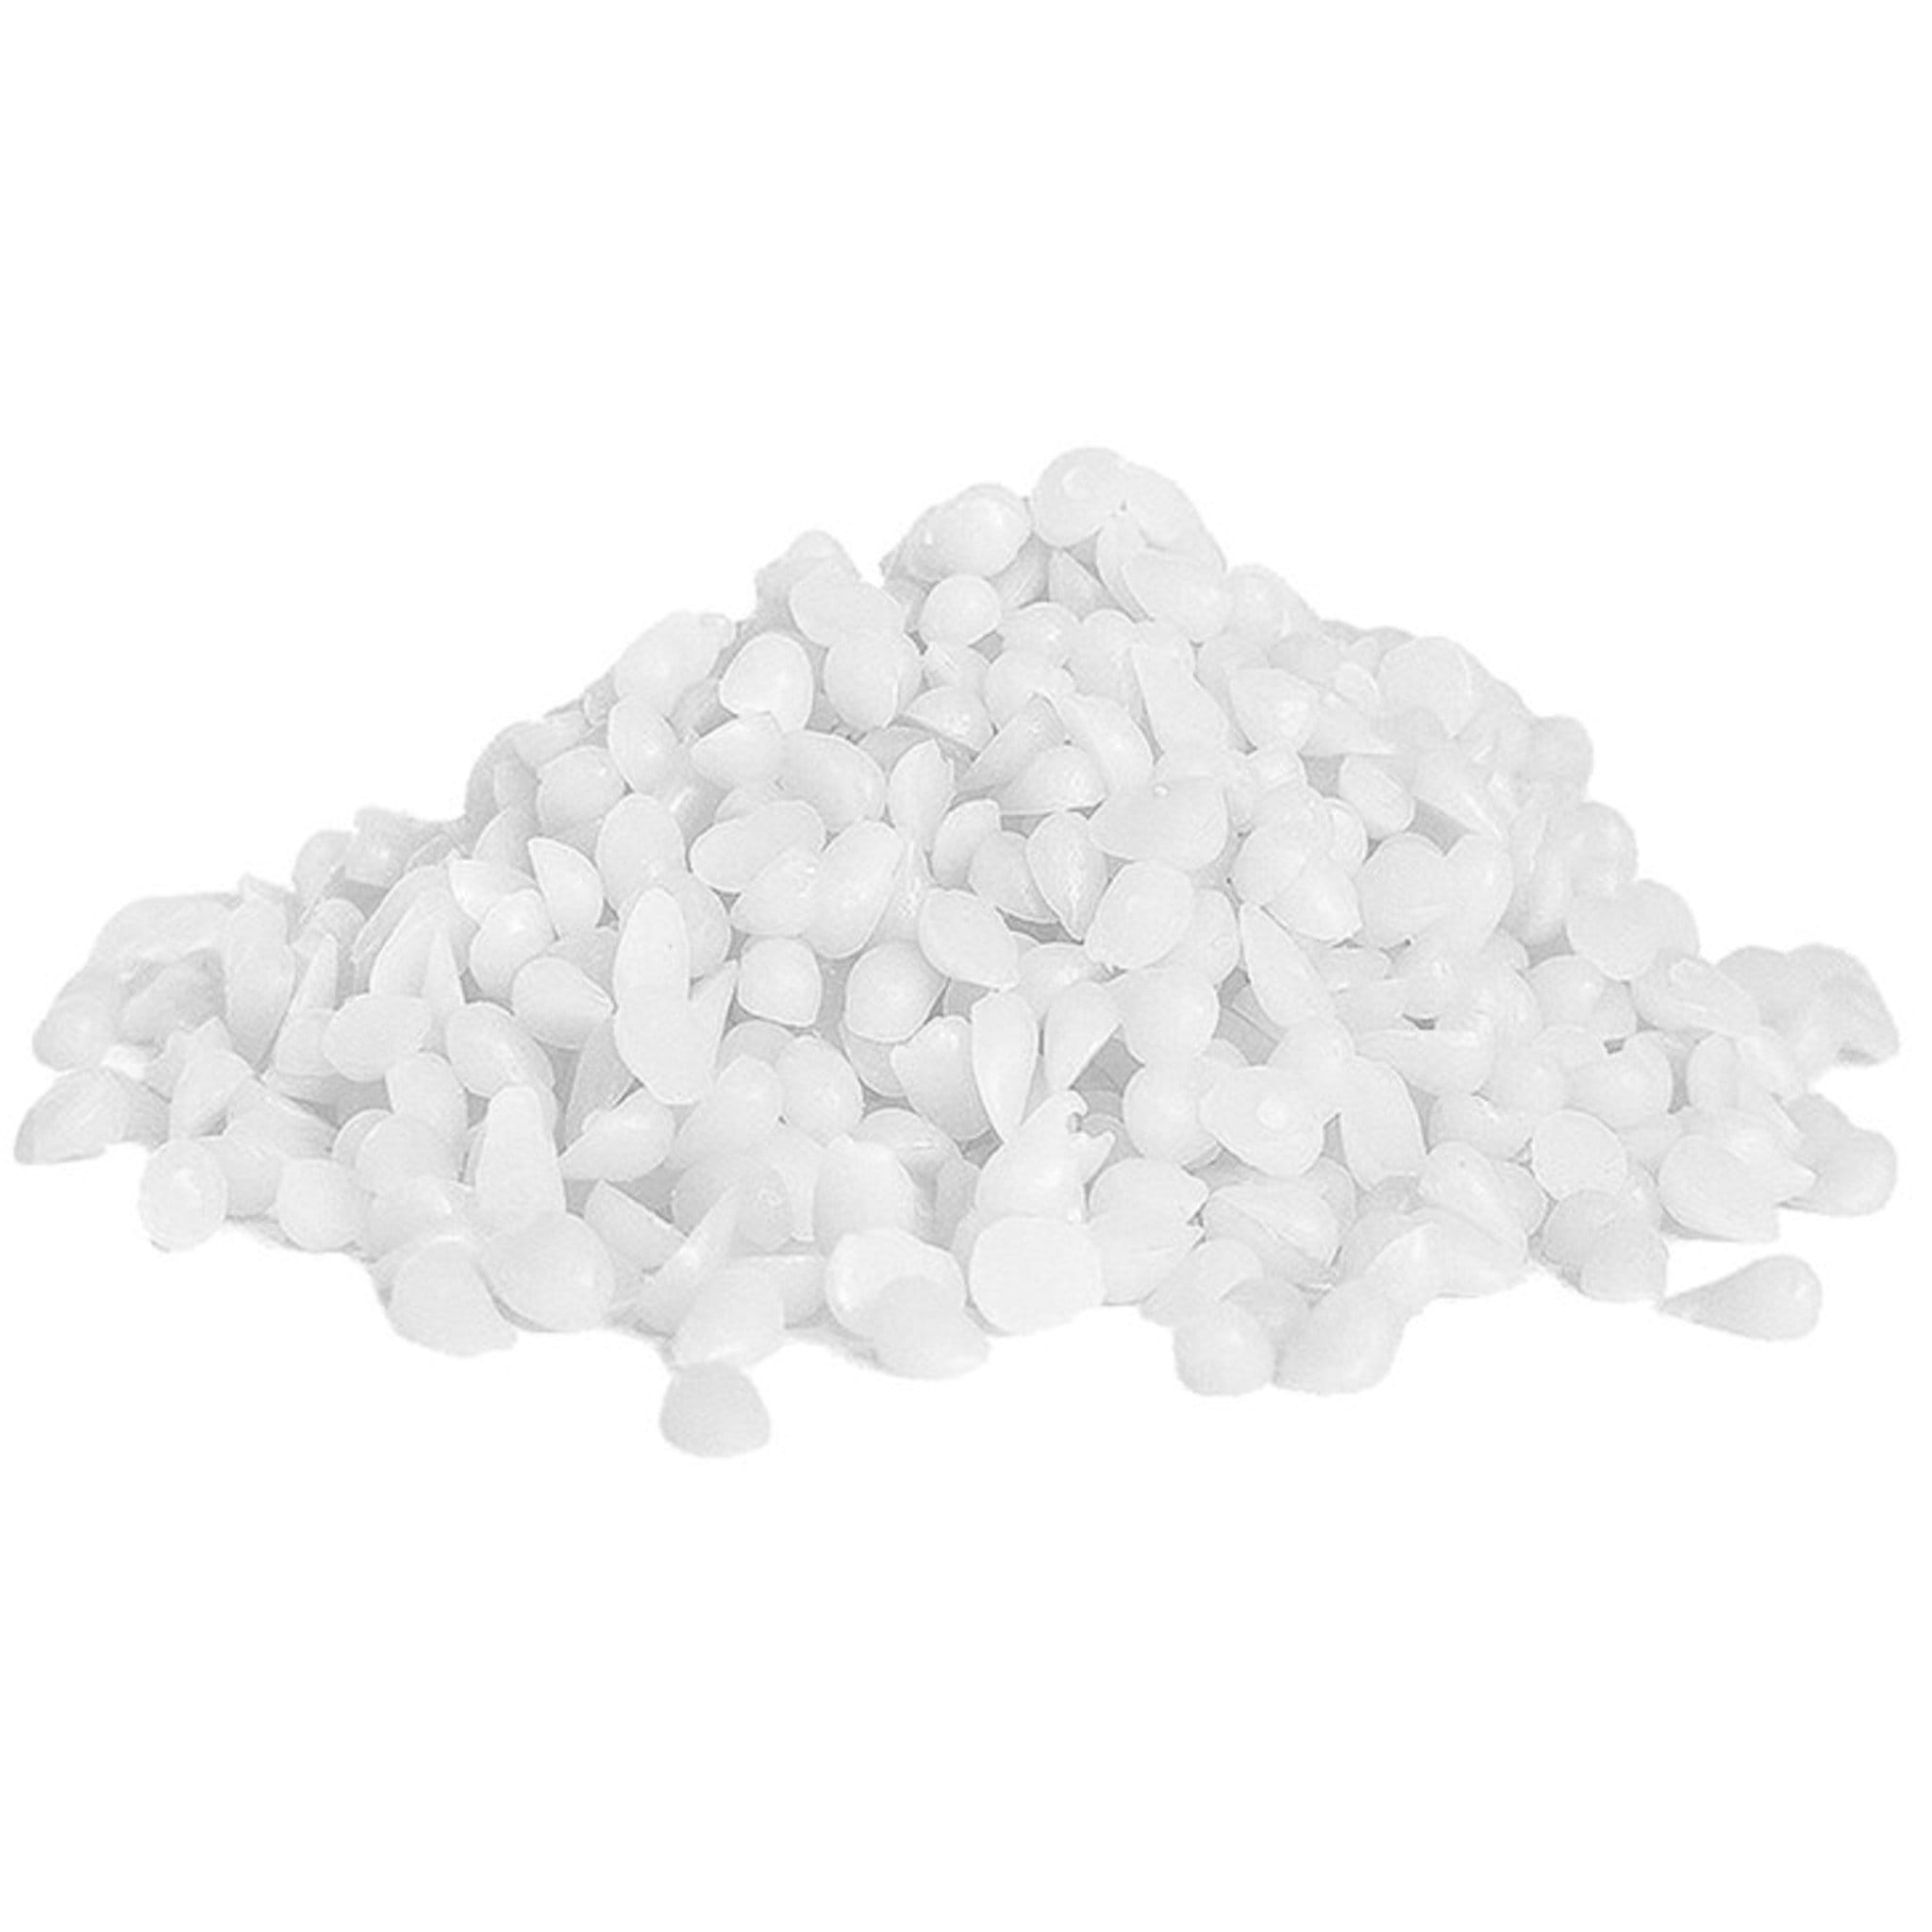 Cera de parafina Pastillas de perlas blancas naturales 100% puras